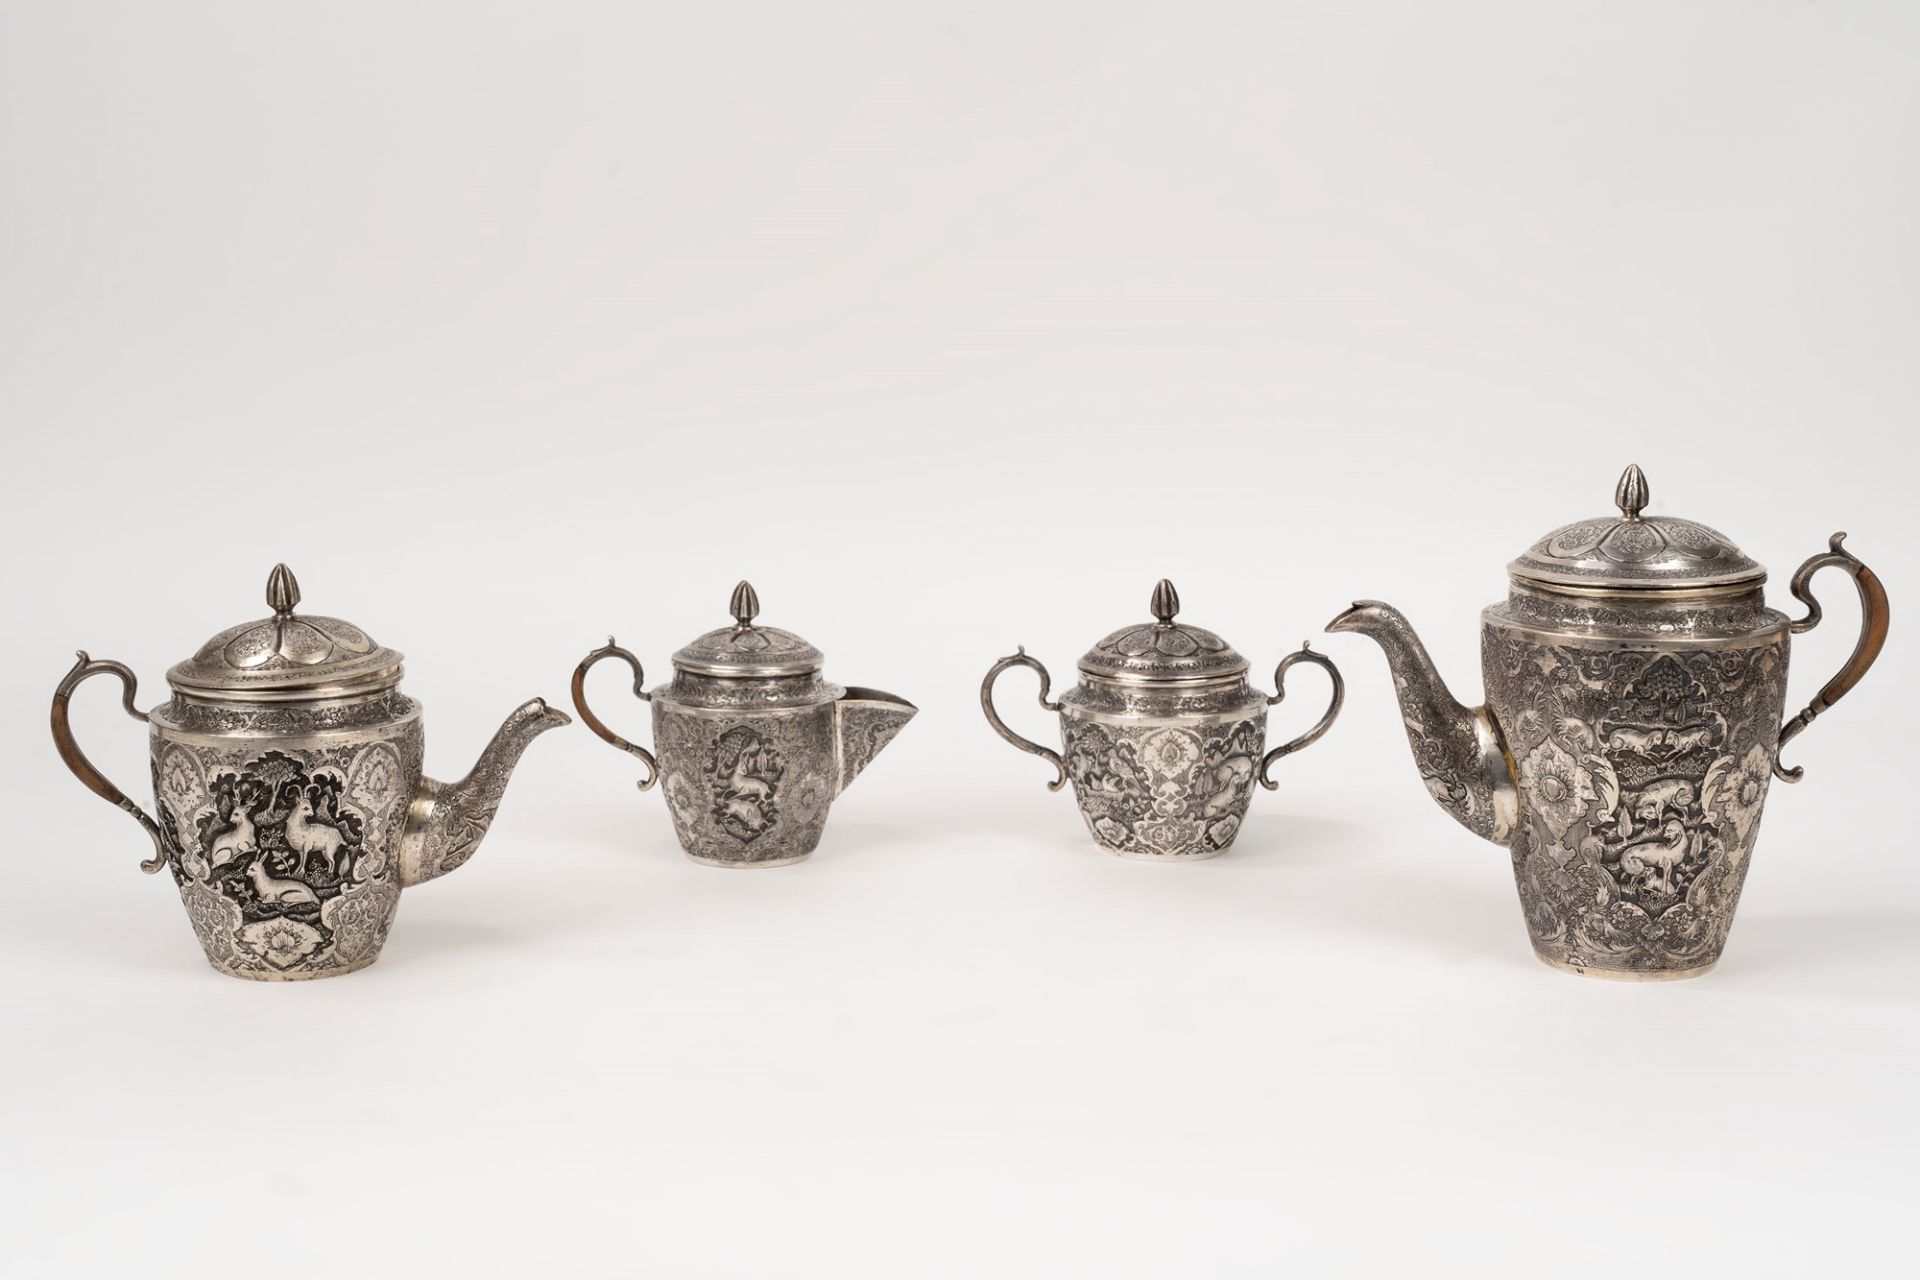 Silver tea service, Persia, 19th century